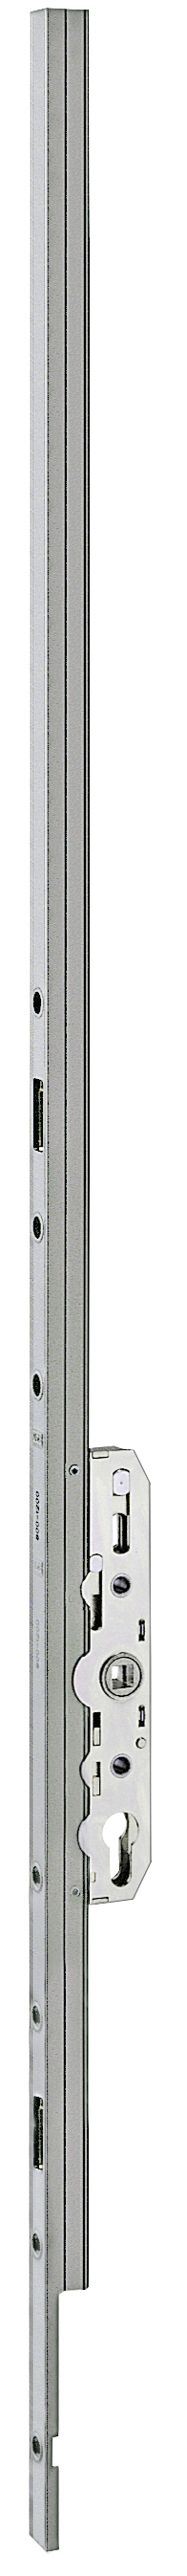 AGB -  Cremonese ALZANTE CLIMATECH per alzante scorrevole altezza maniglia fissa con chiusura a perni - gr / dim. 04 - entrata 37,5 - alt. man. 1000 - lbb/hbb 1920-2400